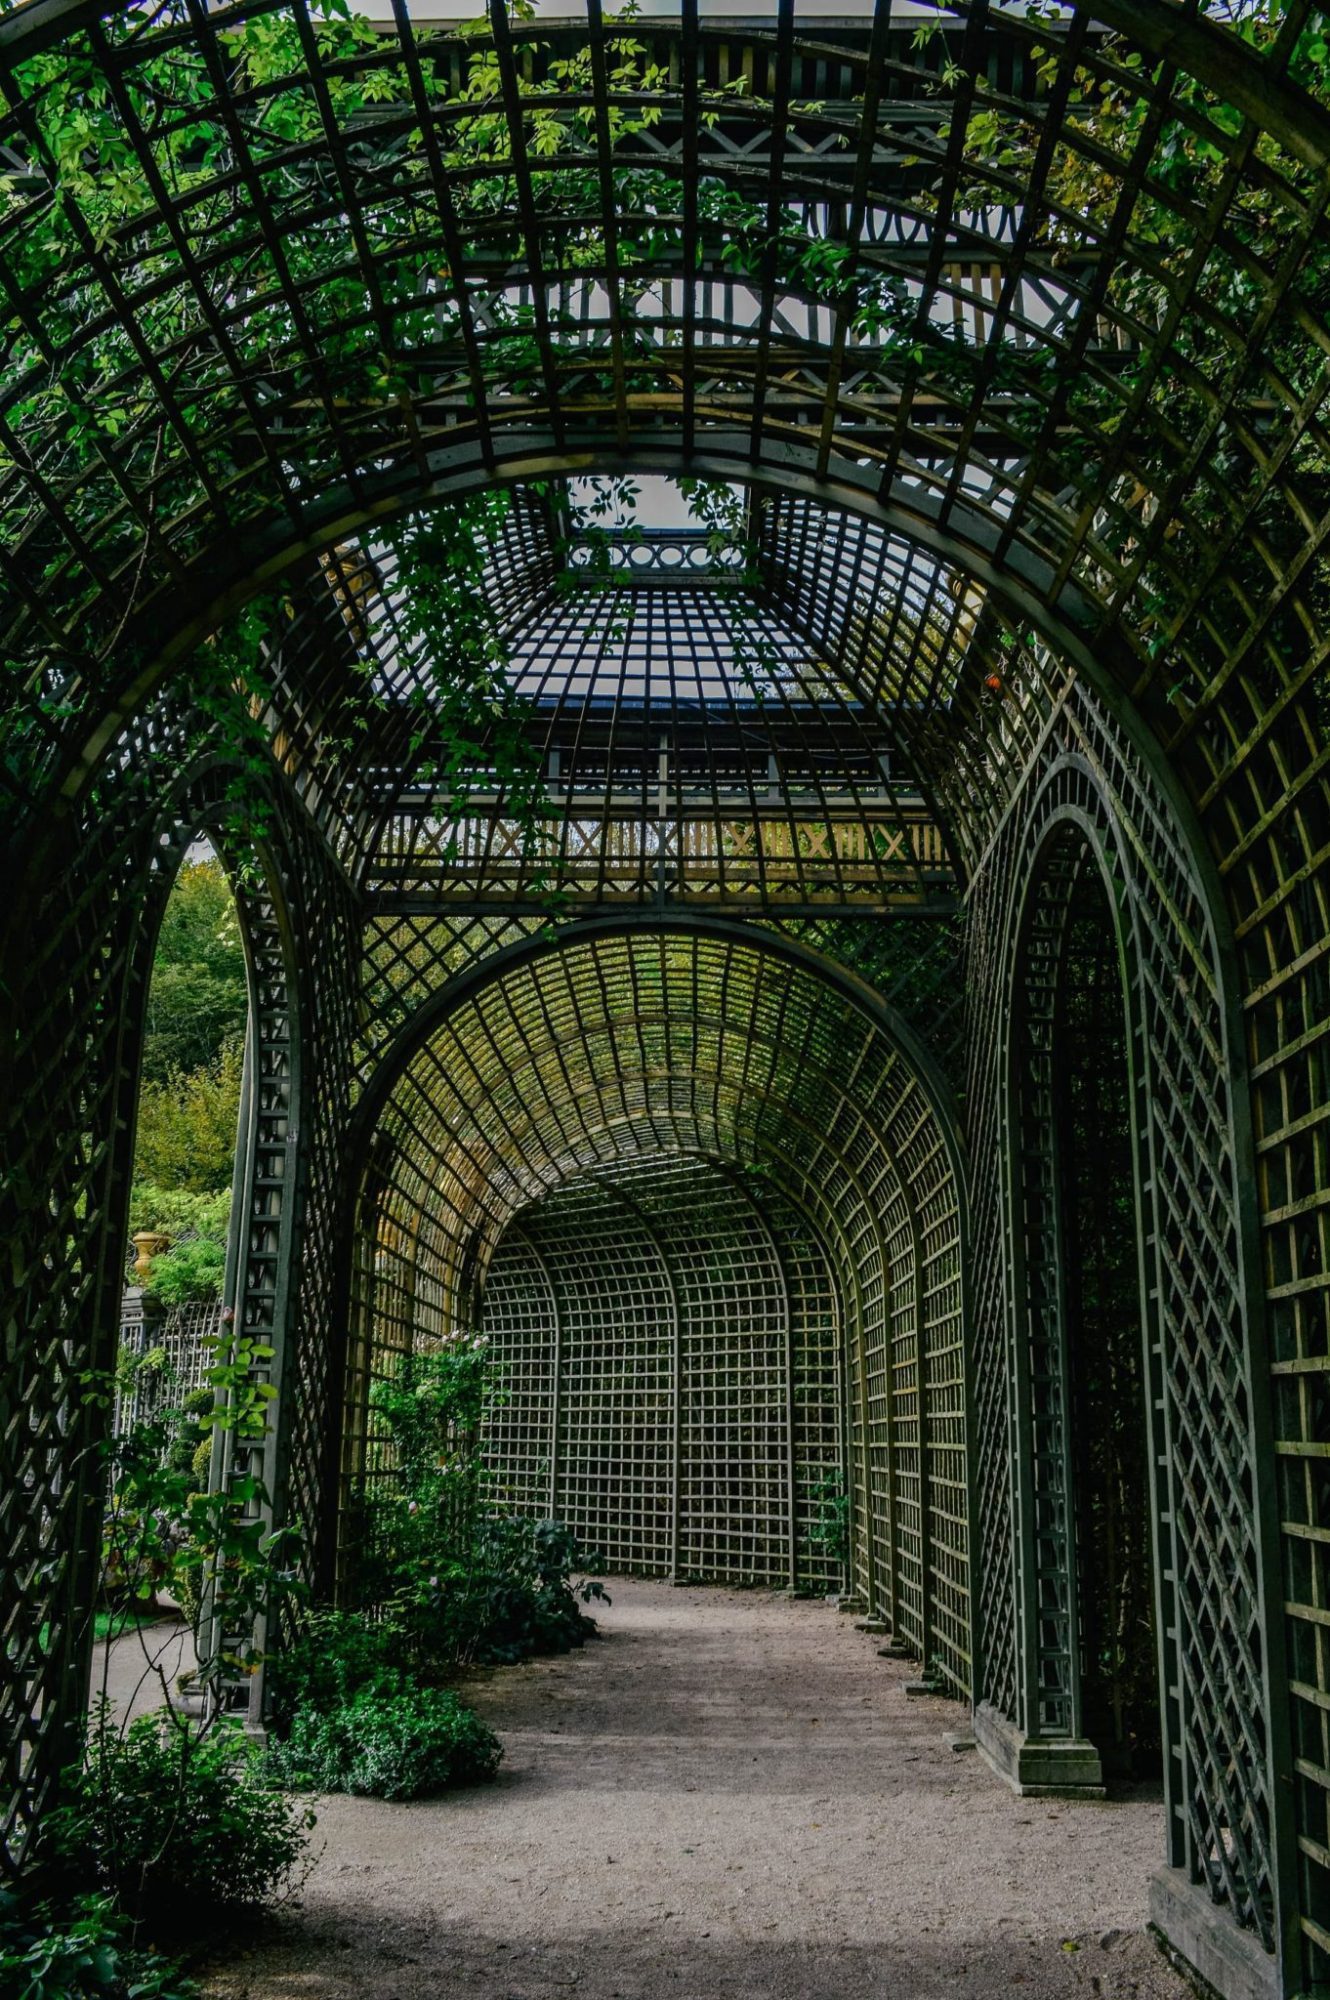 Under the trellis in the garden of Versailles